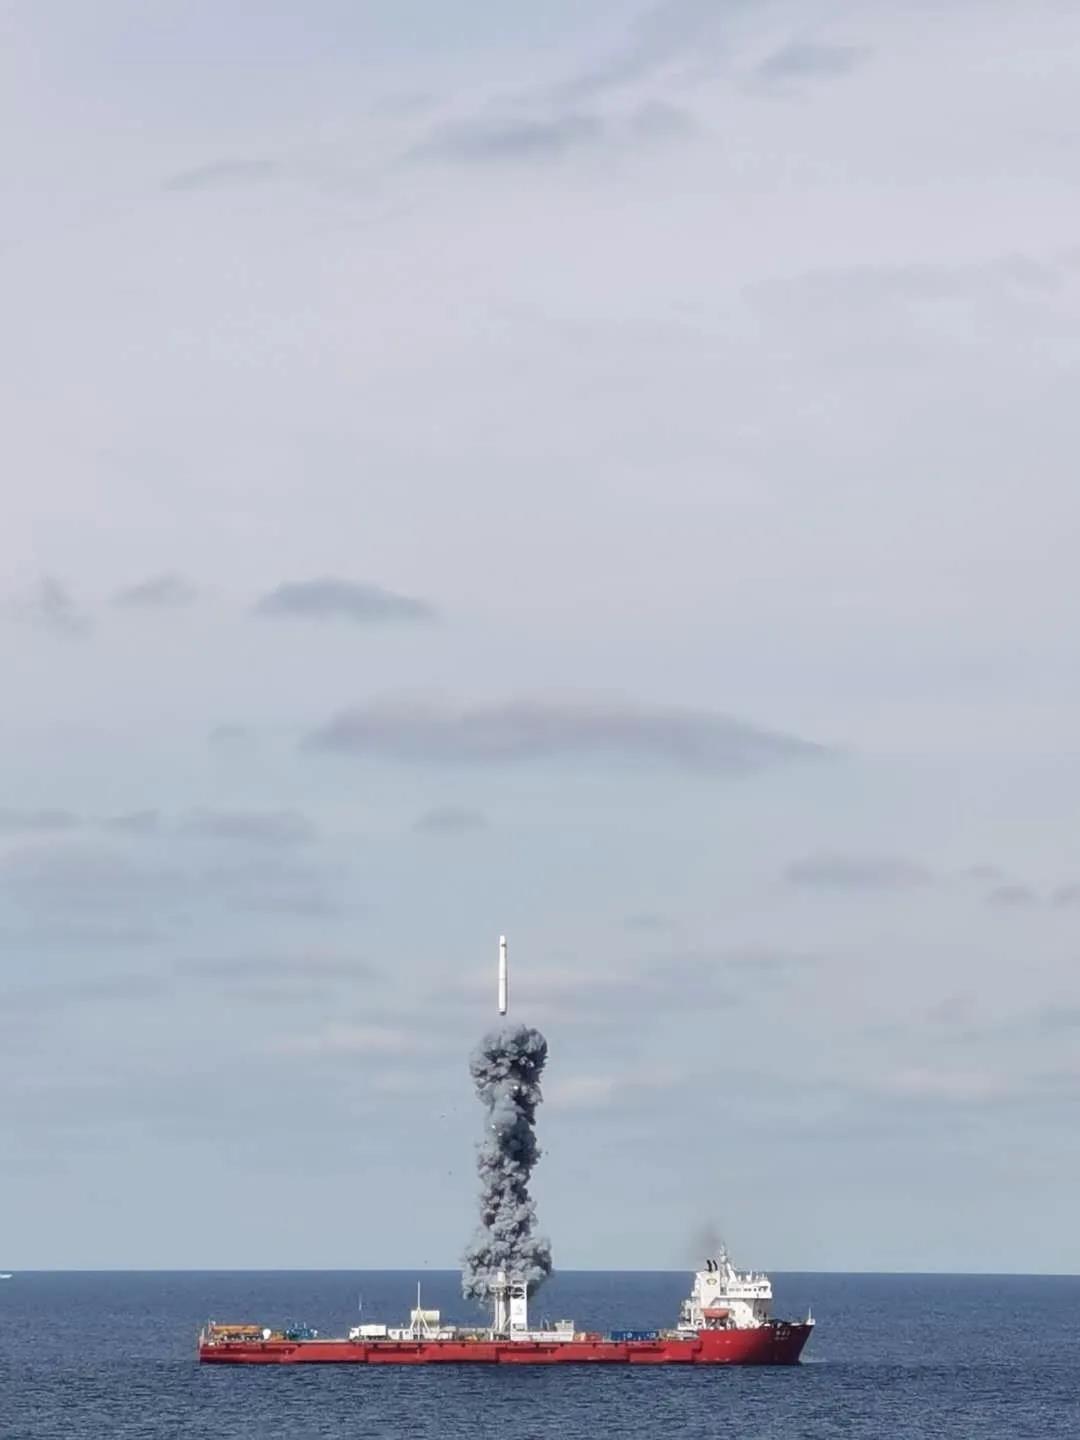 一箭九星——长征十一号海射运载火箭成功将“吉林一号”高分03-1组卫星送入预定轨道